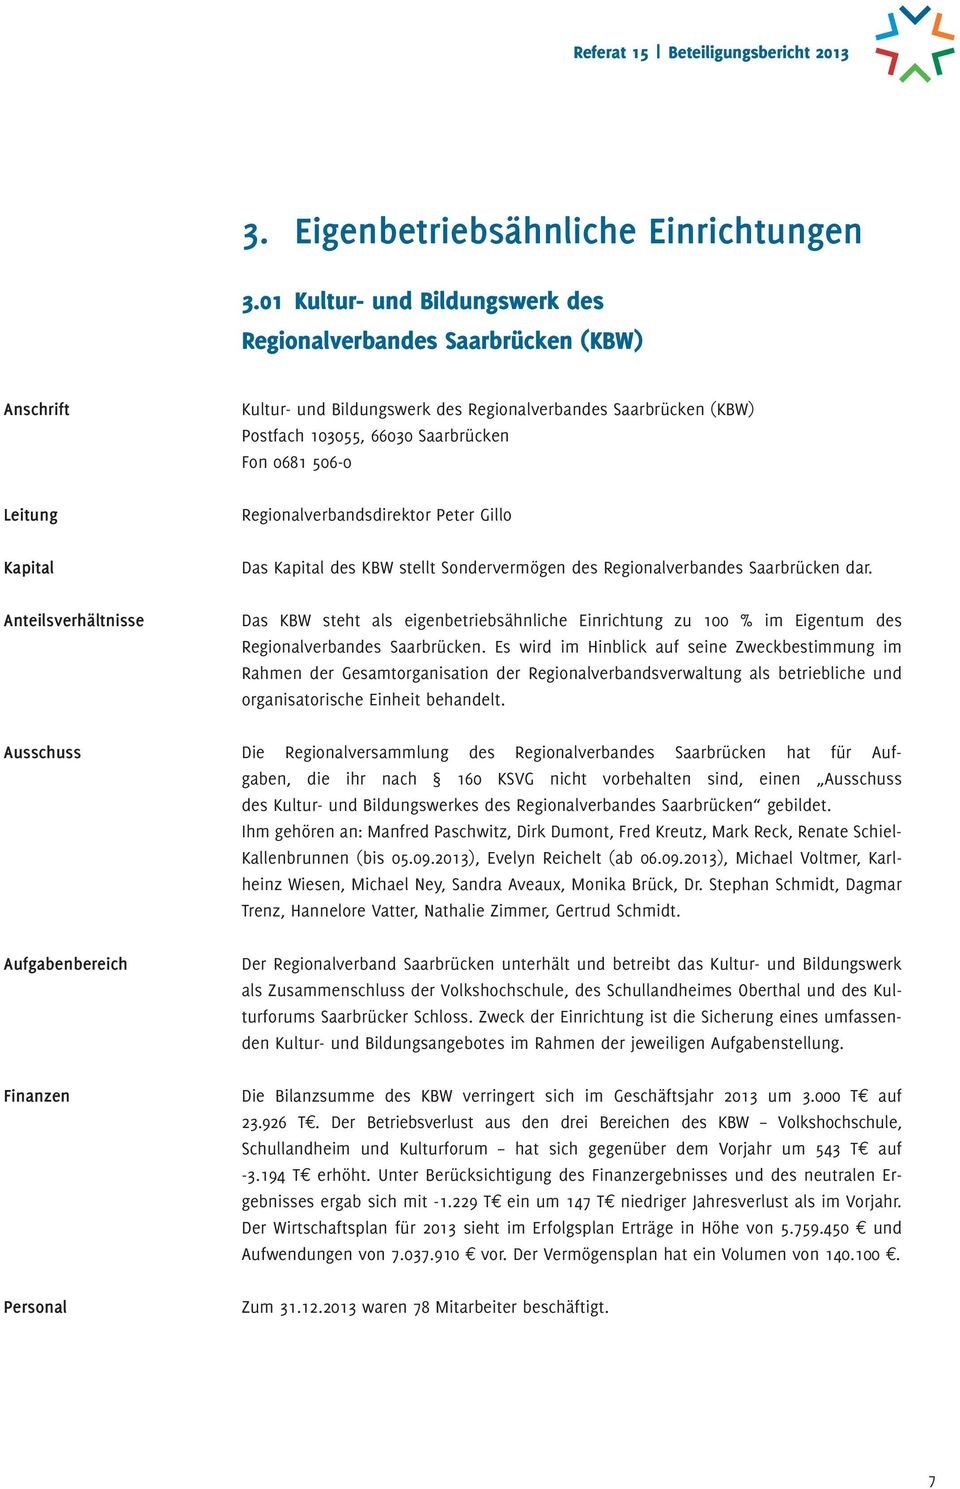 66030 Saarbrücken Fon 0681 506-0 Regionalverbandsdirektor Peter Gillo Das Kapital des KBW stellt Sondervermögen des Regionalverbandes Saarbrücken dar.